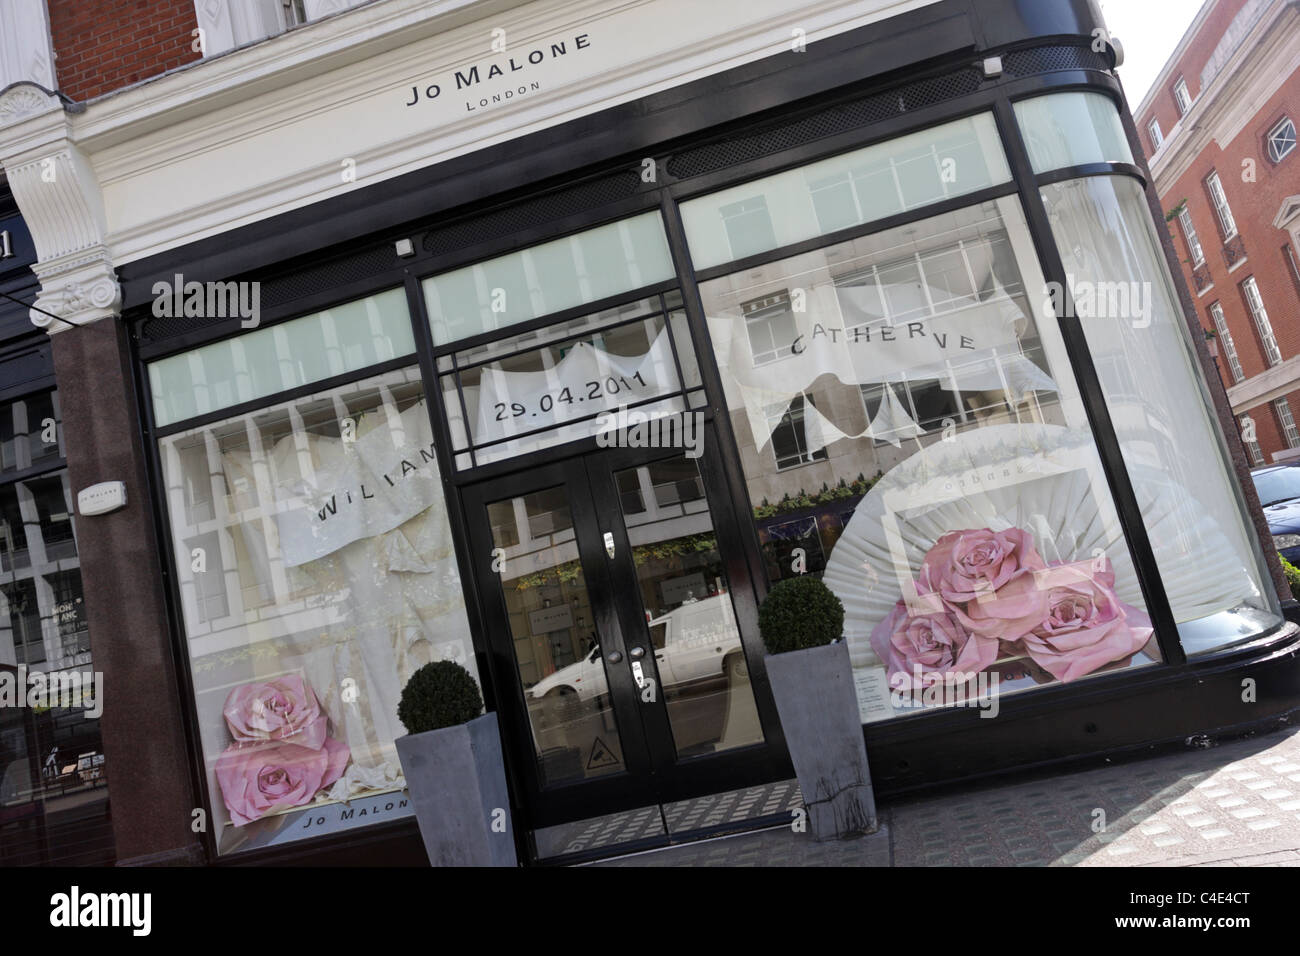 Jo Malone outlet in Sloane Street, London Stock Photo - Alamy